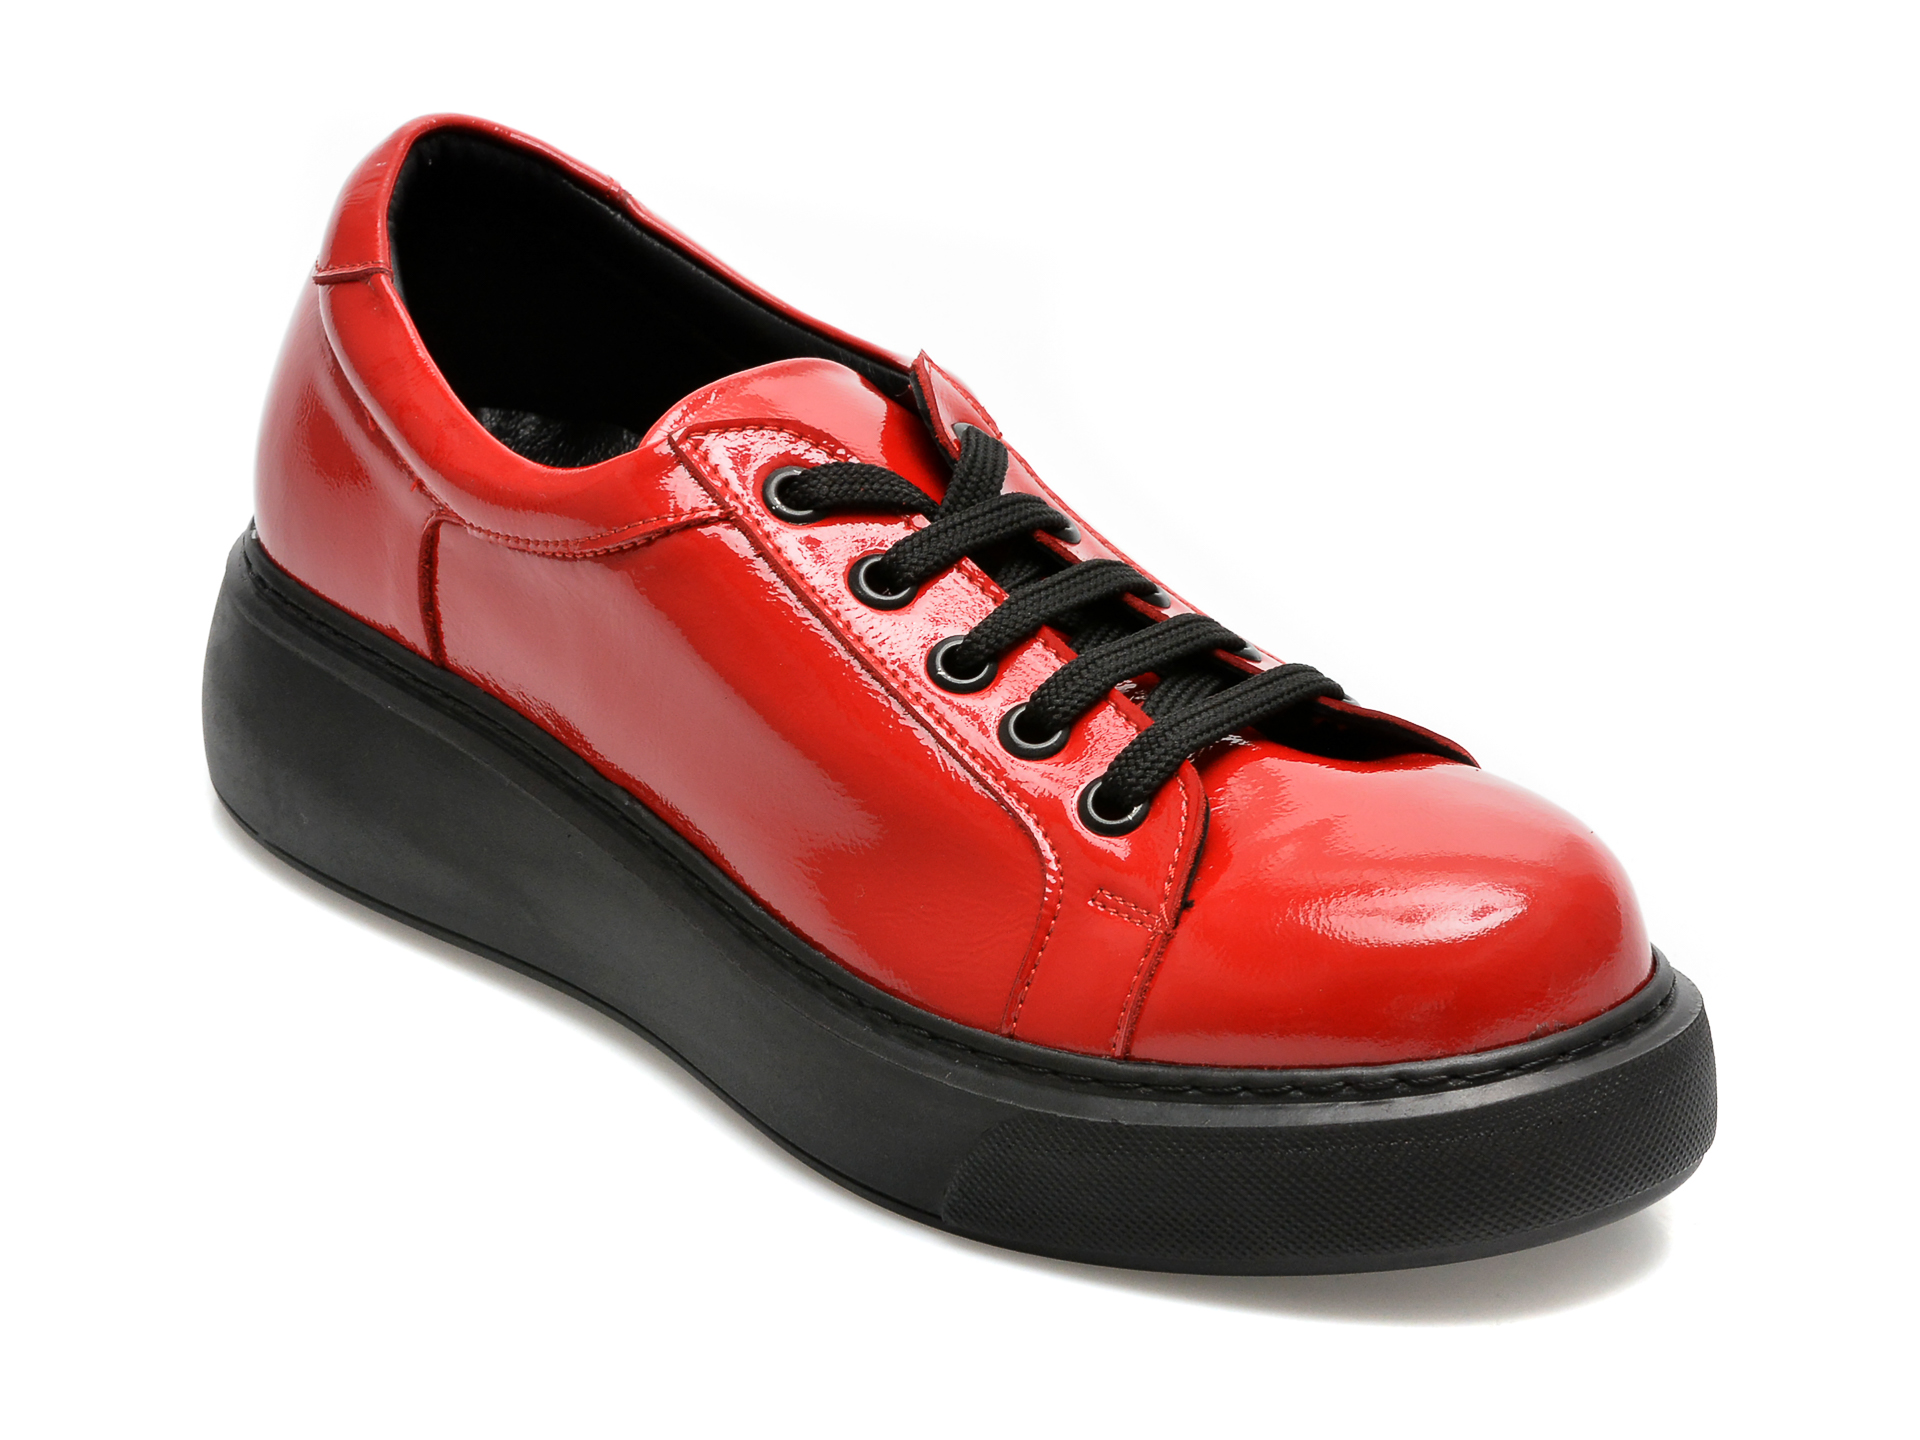 Pantofi FLAVIA PASSINI rosii, 15401, din piele naturala lacuita